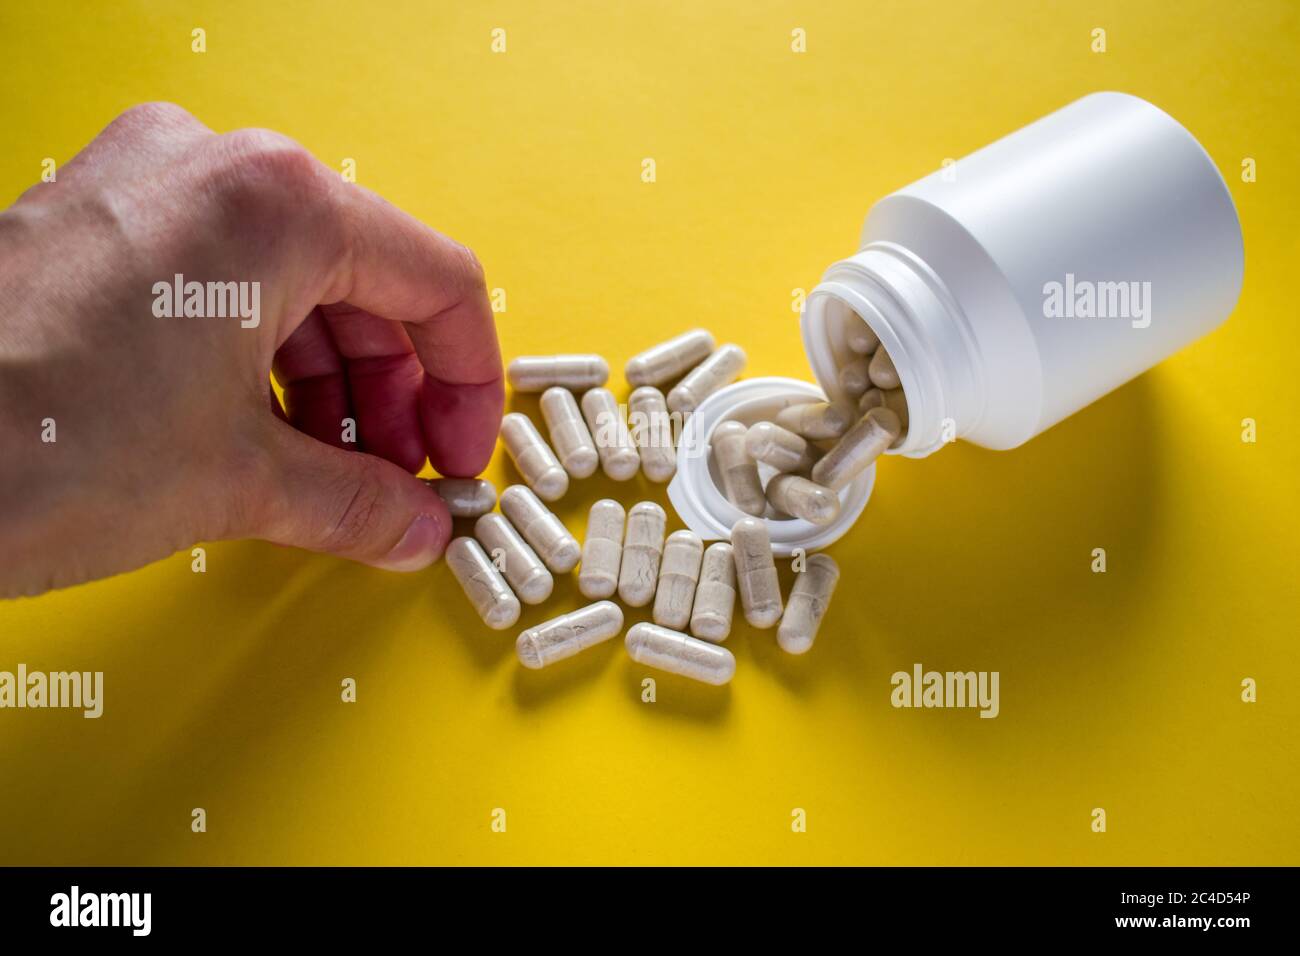 Mano prendendo spilled pillole mediche dal flacone di pillola su sfondo giallo Foto Stock